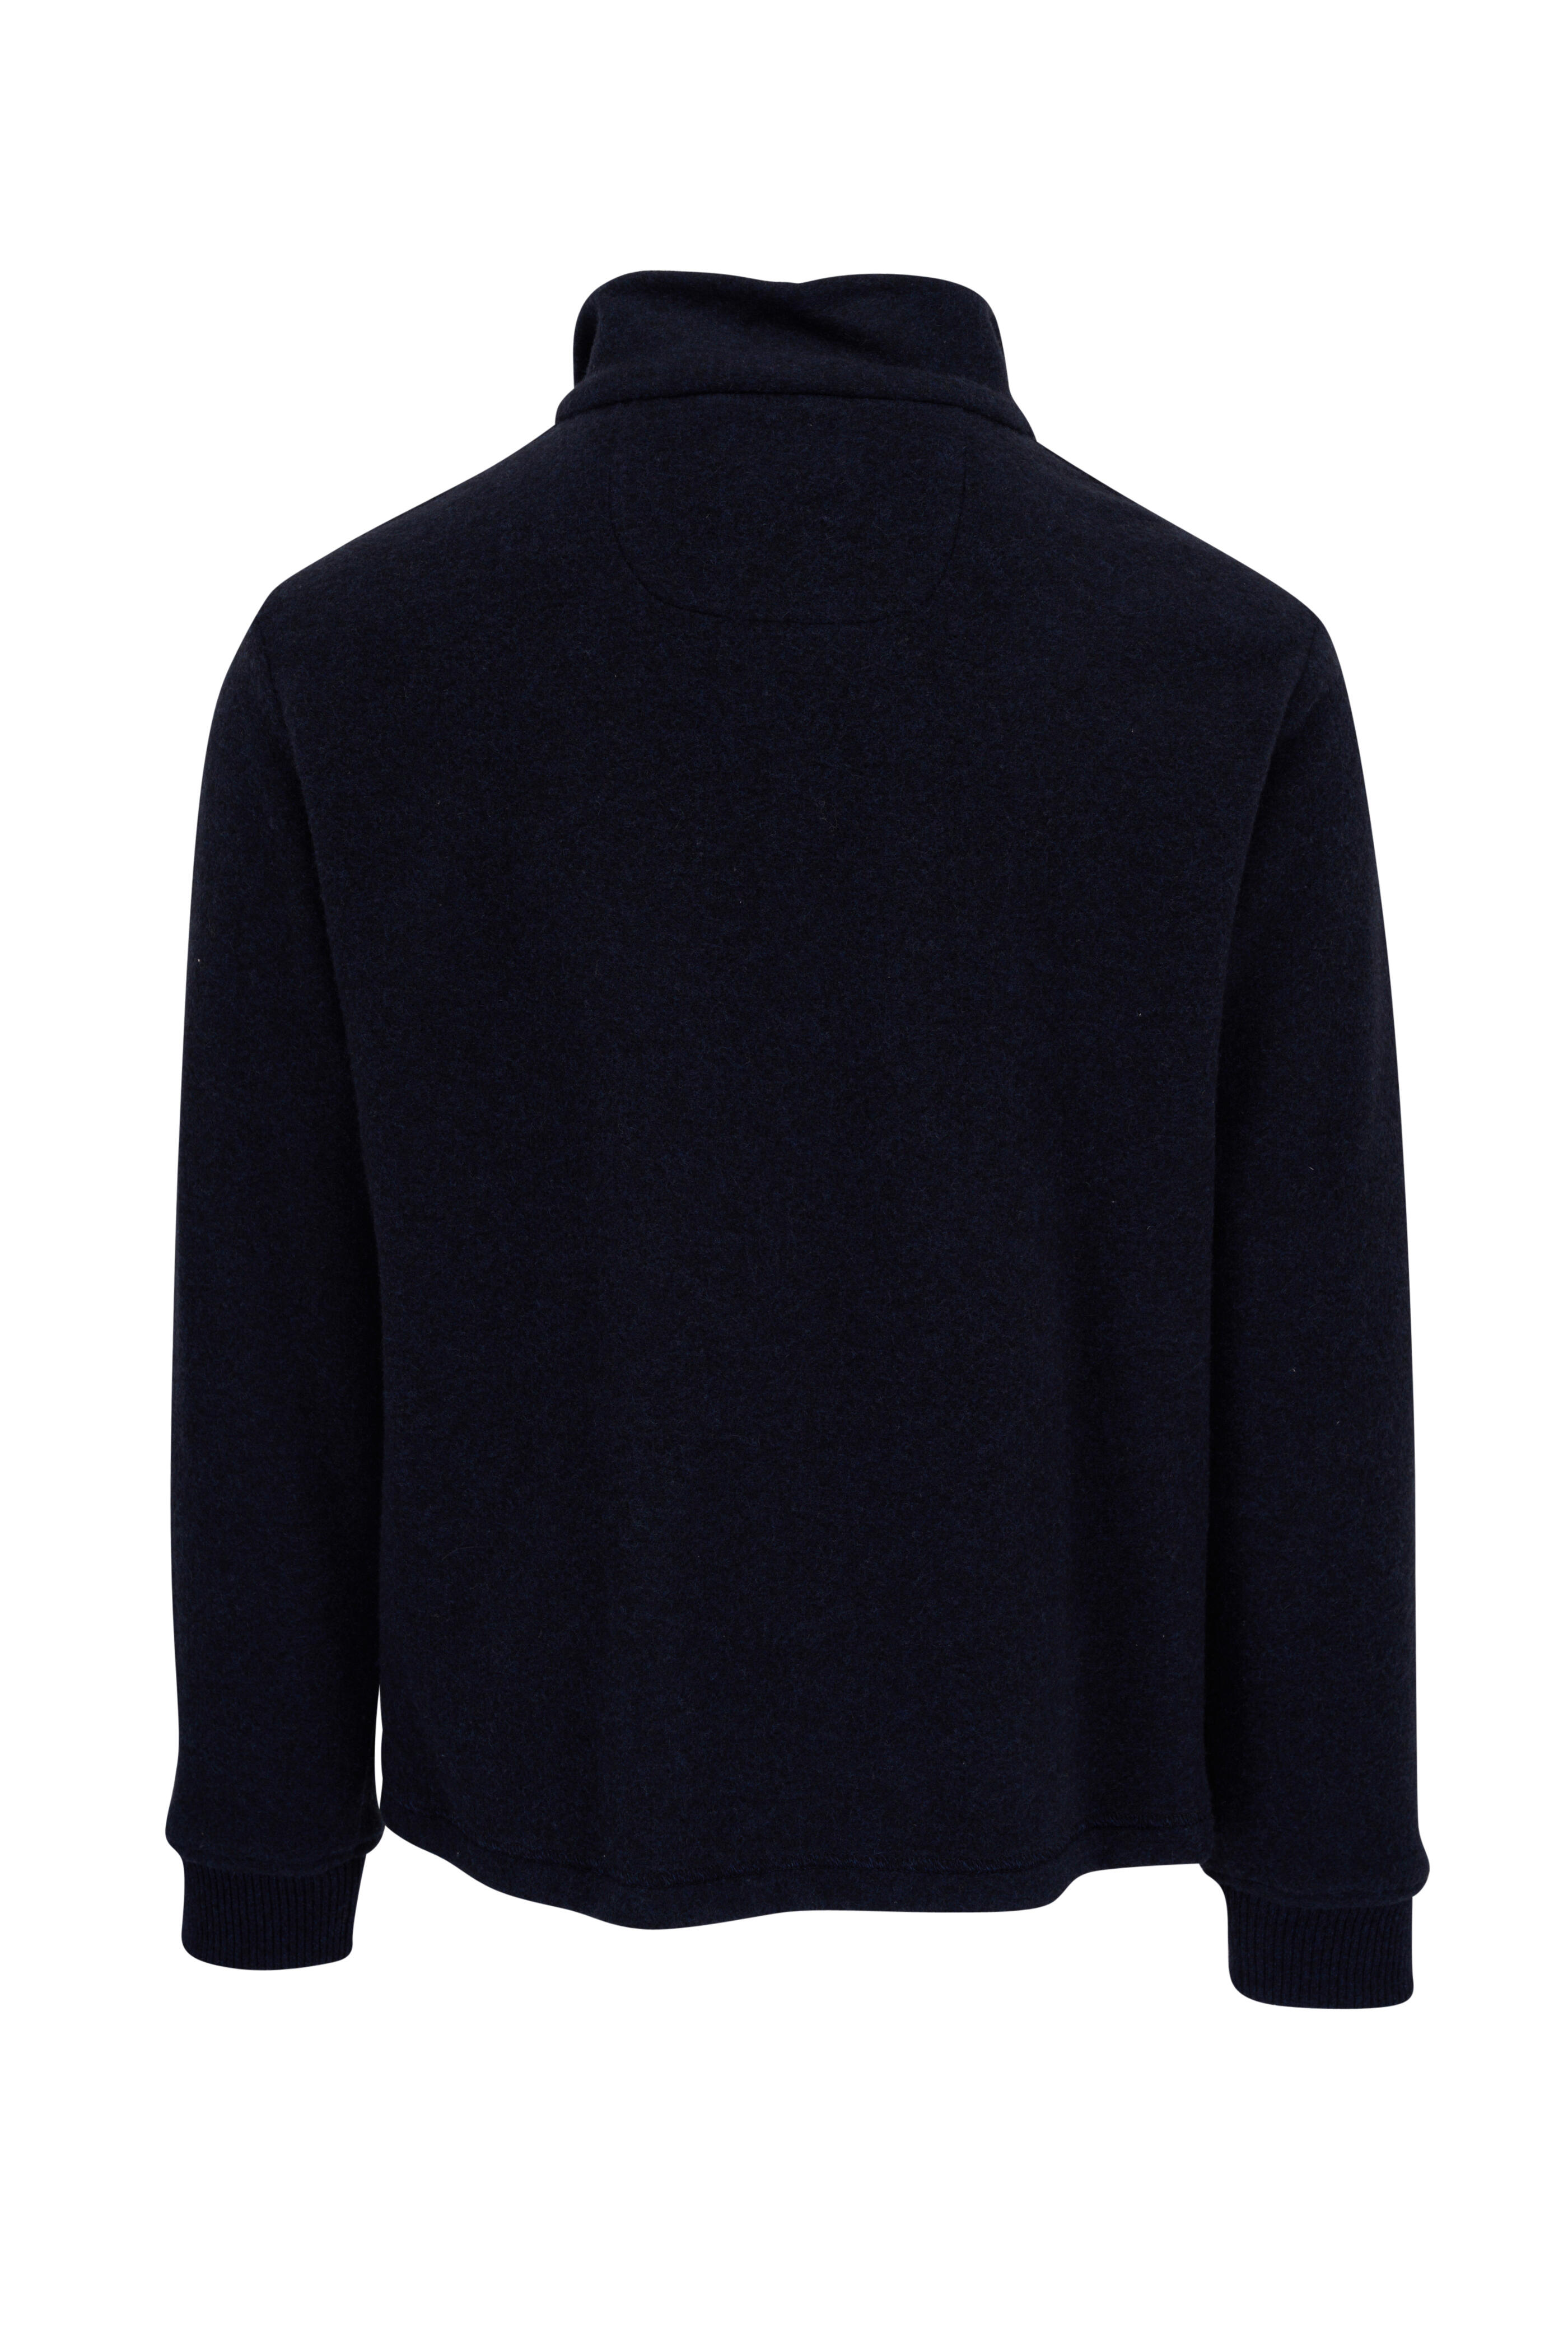 Fedeli - Navy Blue Cashmere Velour Full Zip Sweater